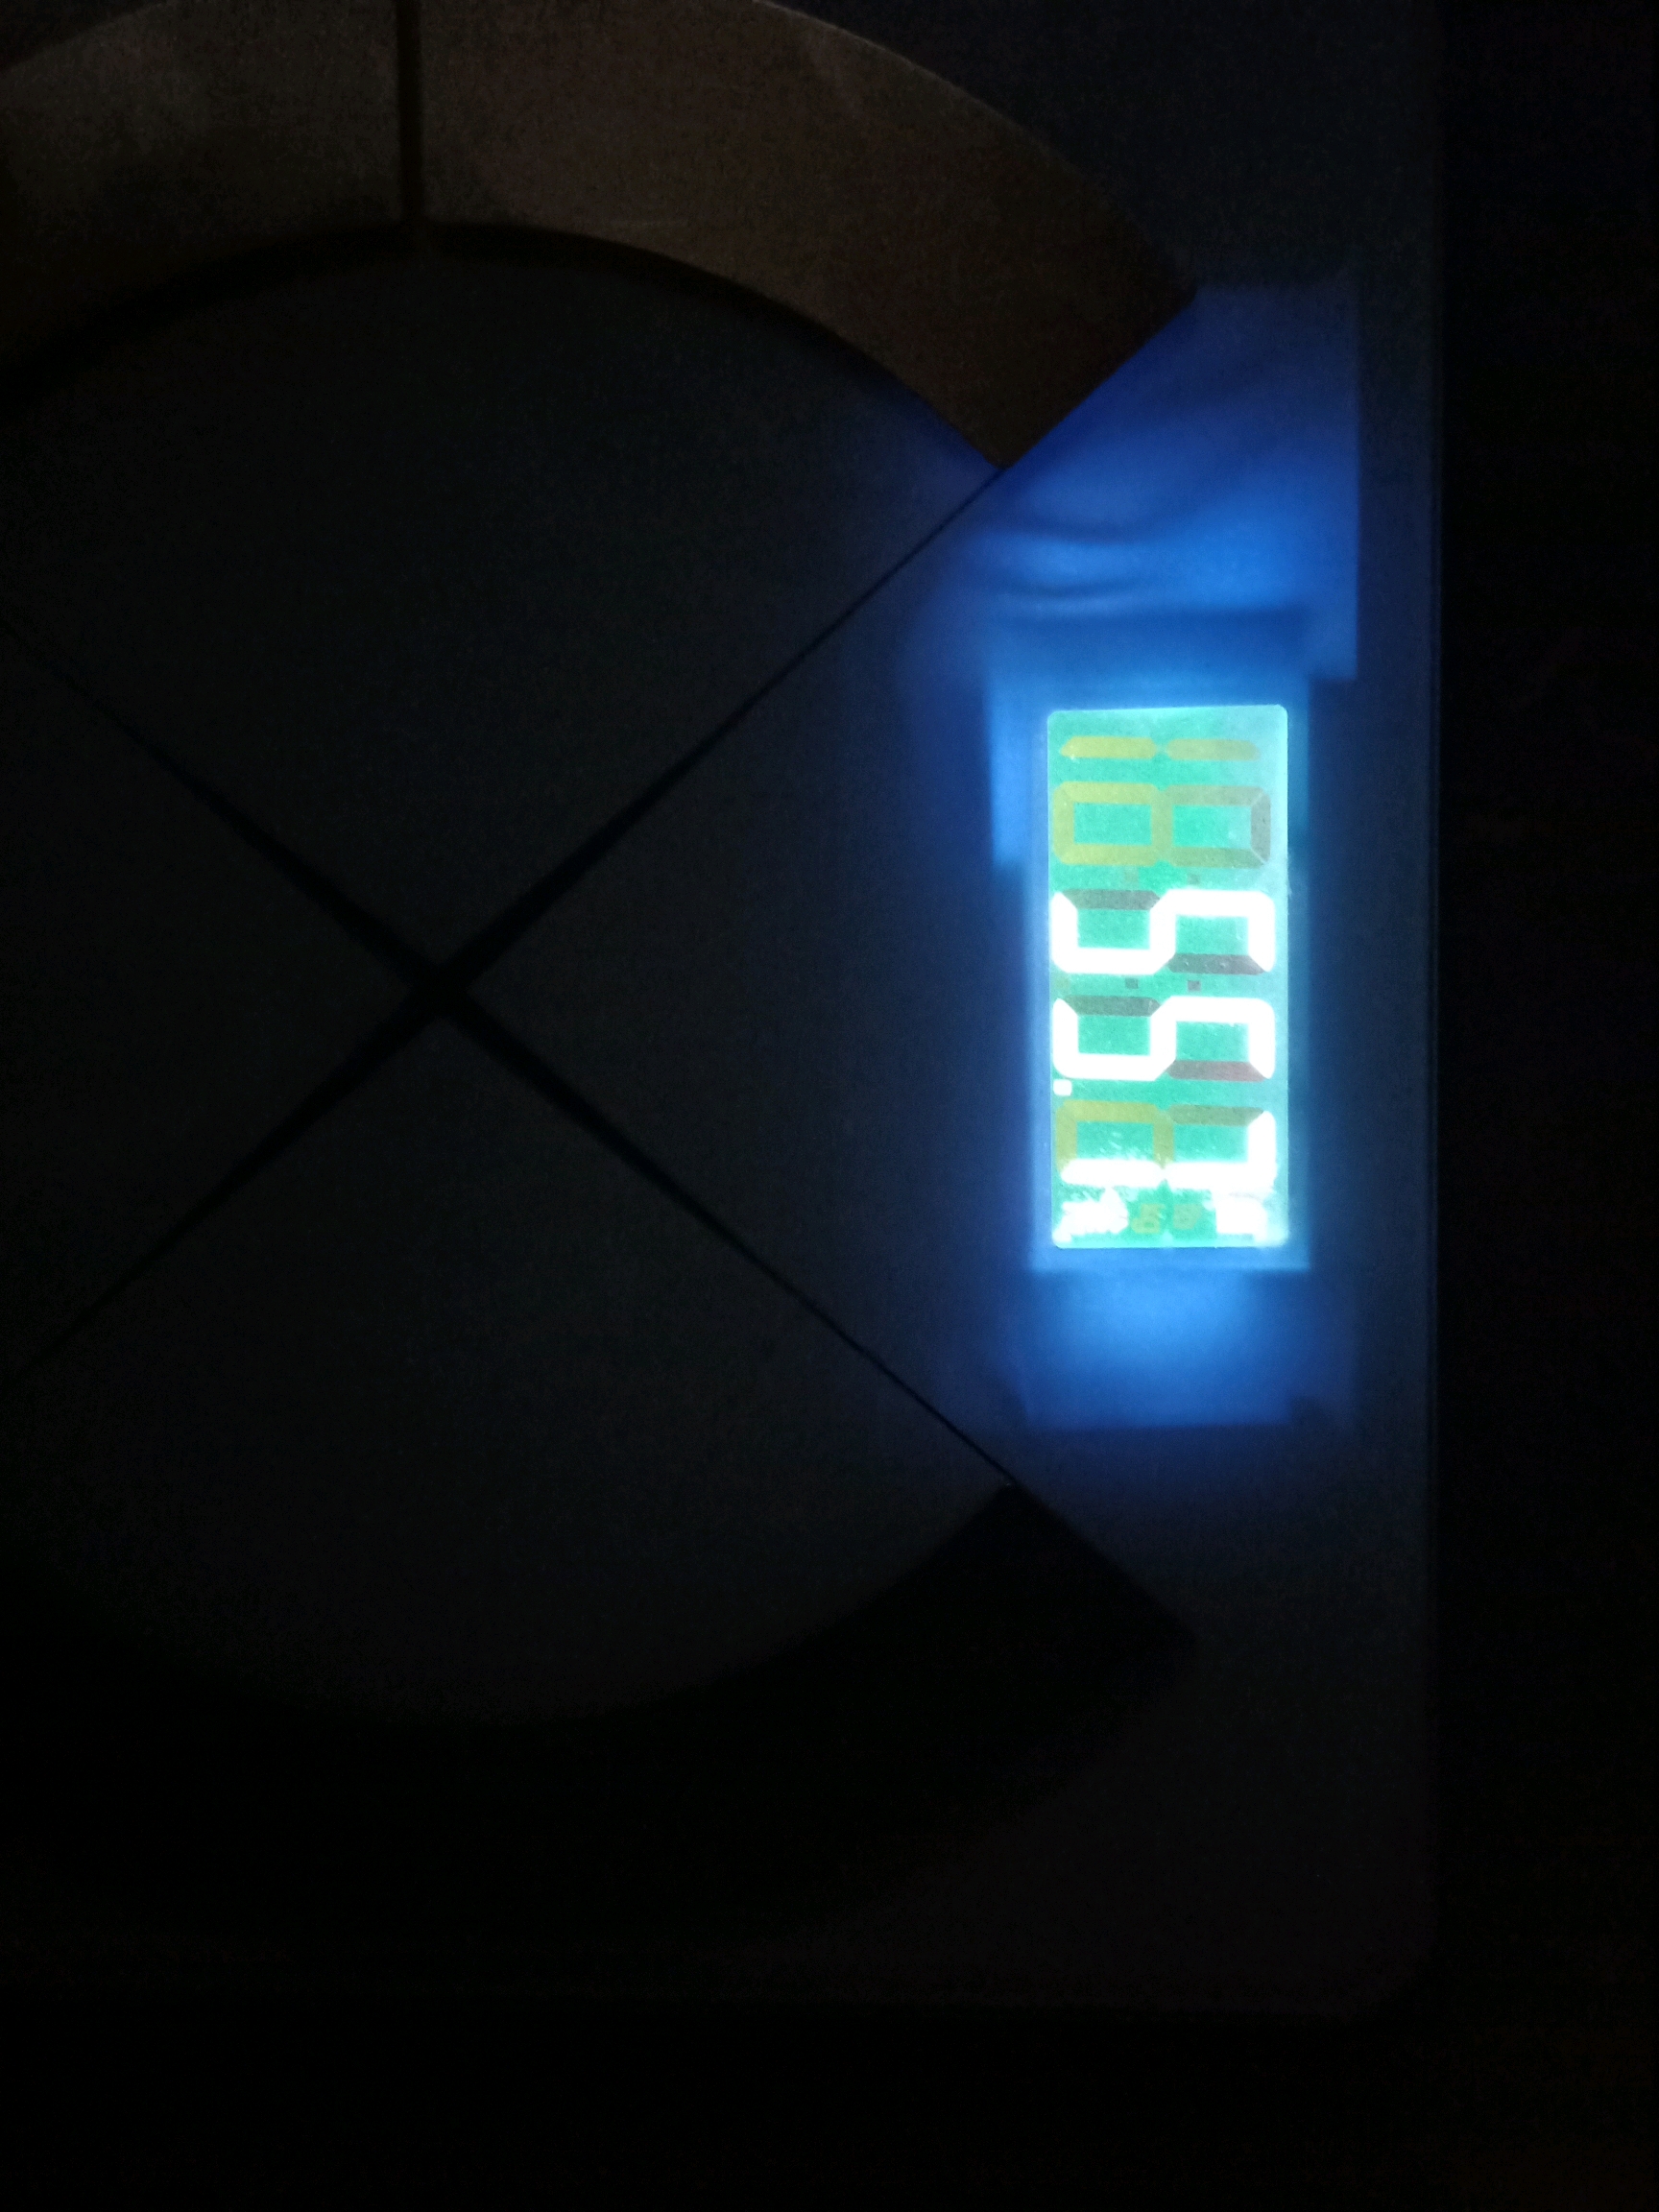 2kg 今日体重55.7kg (4.12) 减肥期间最瘦:55kg